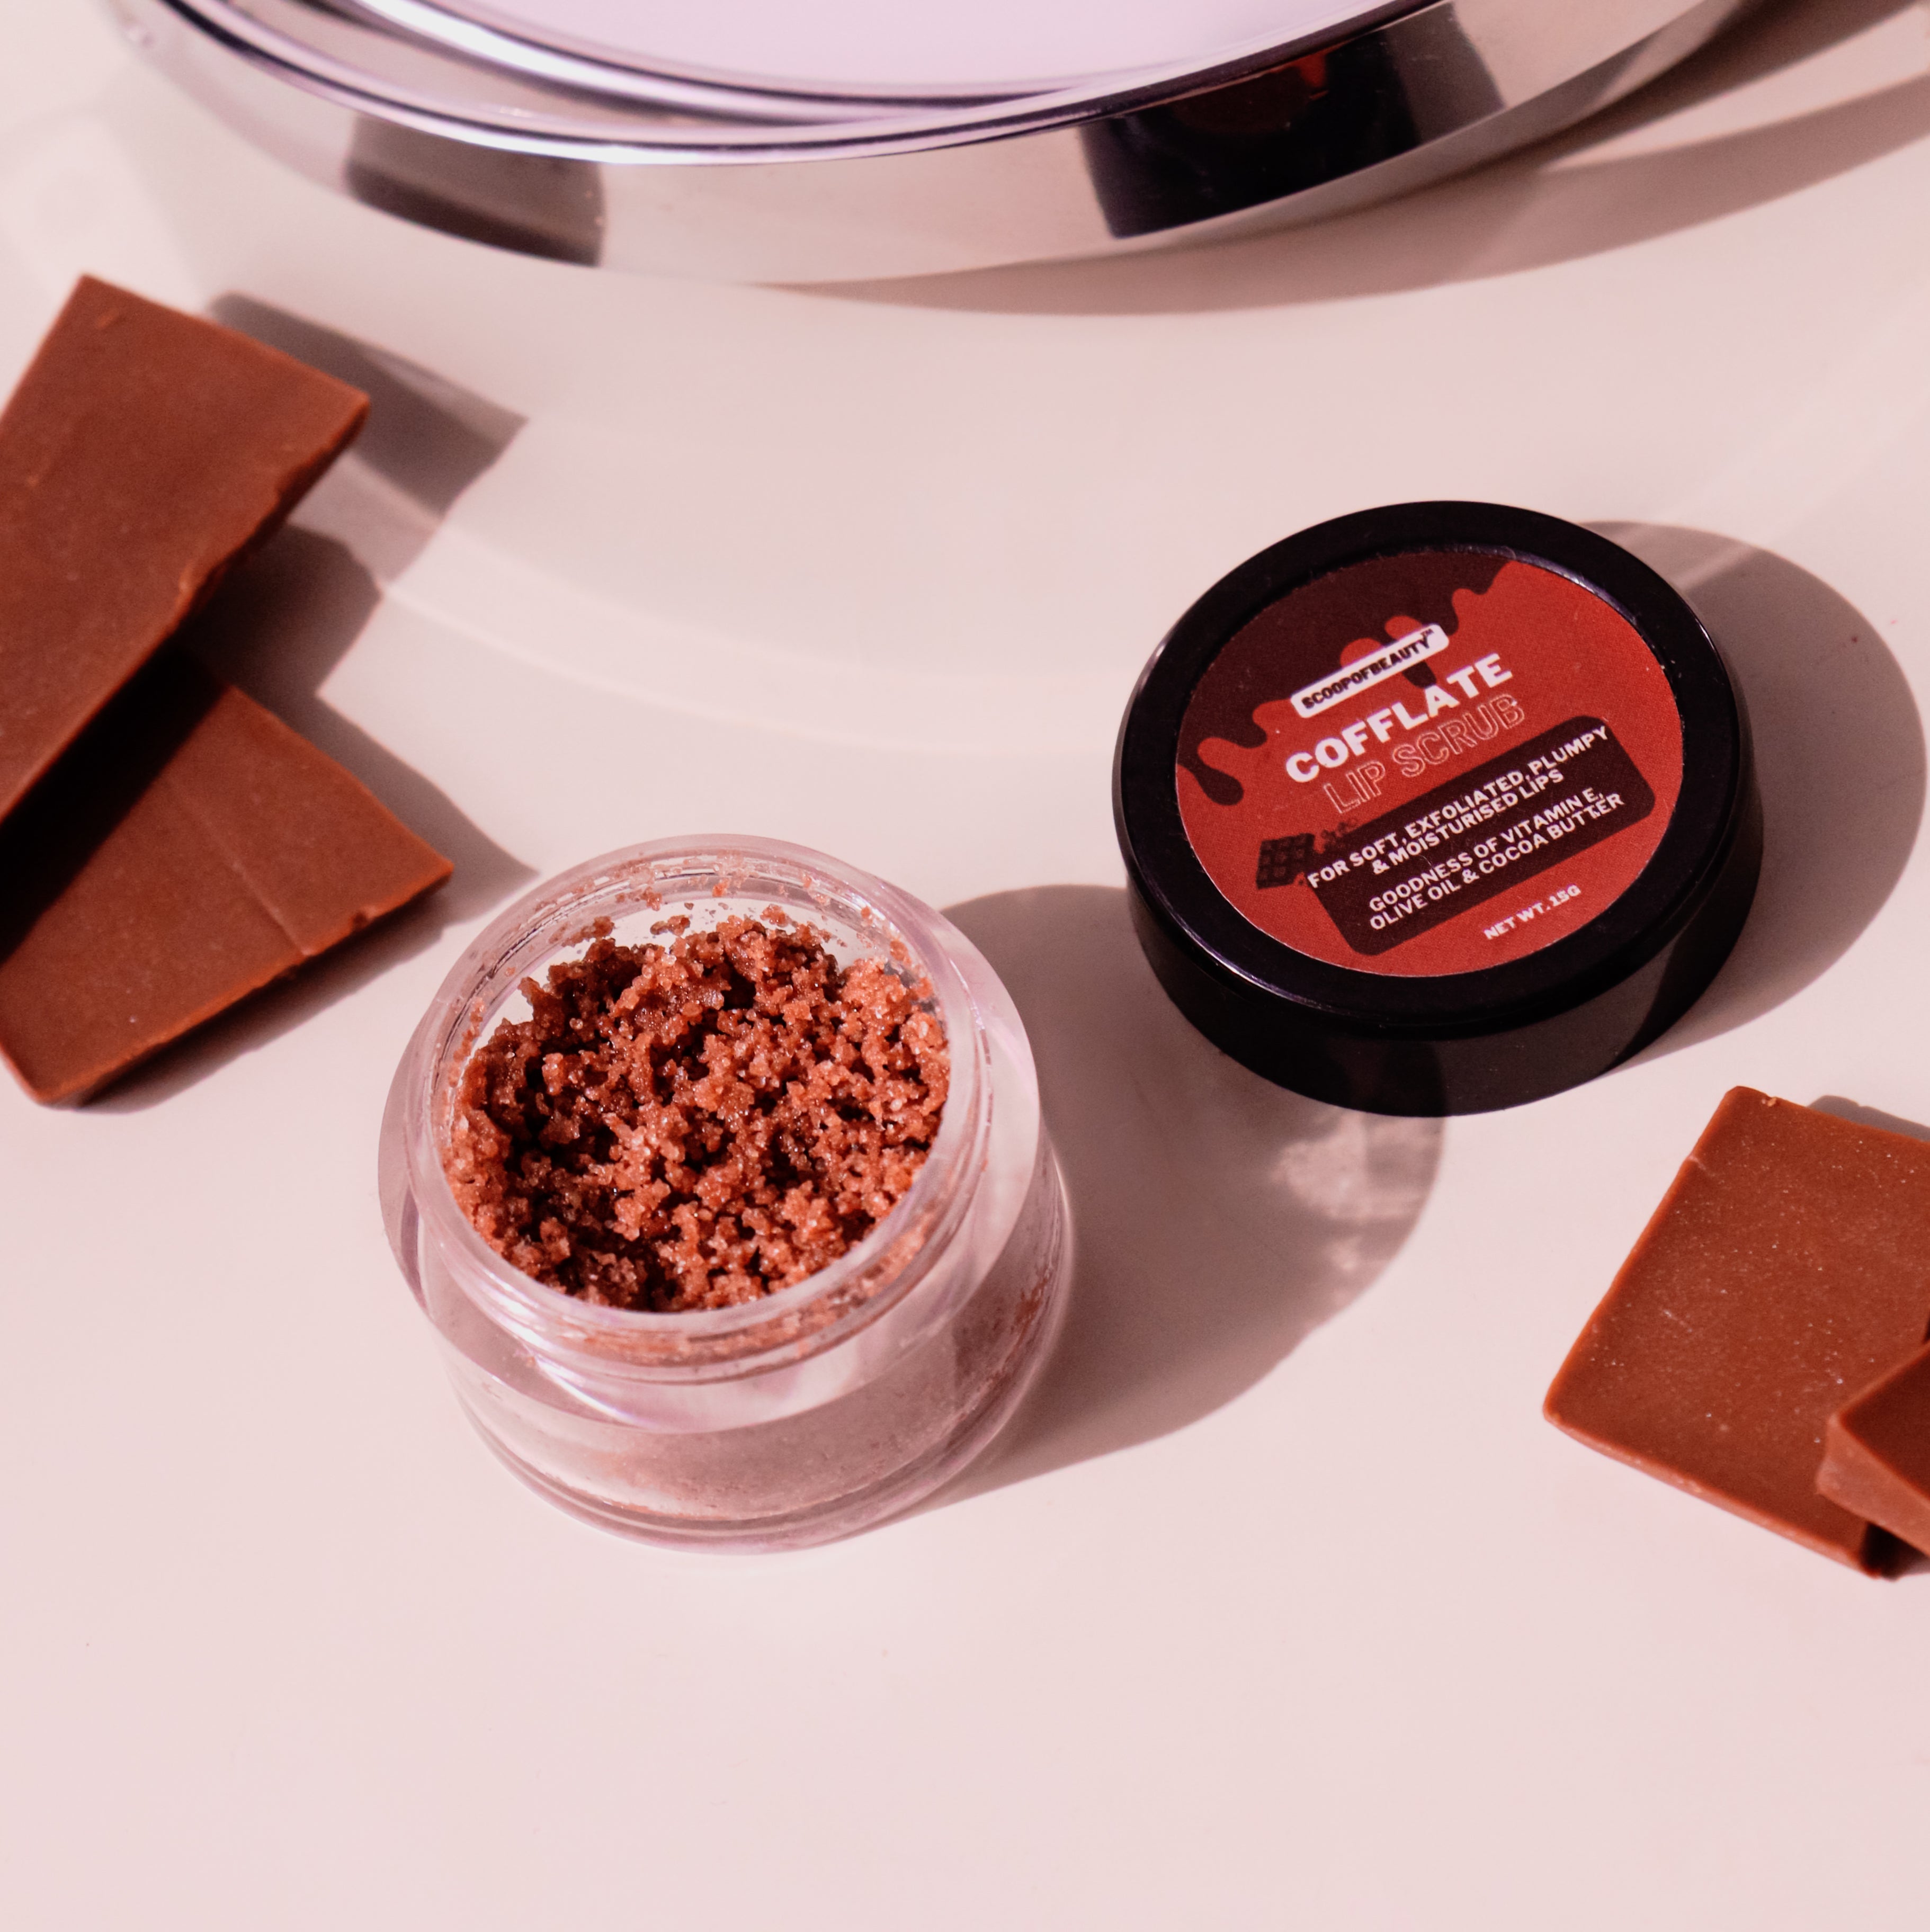 Chocolate-Coffee lip scrub + lip balm combo